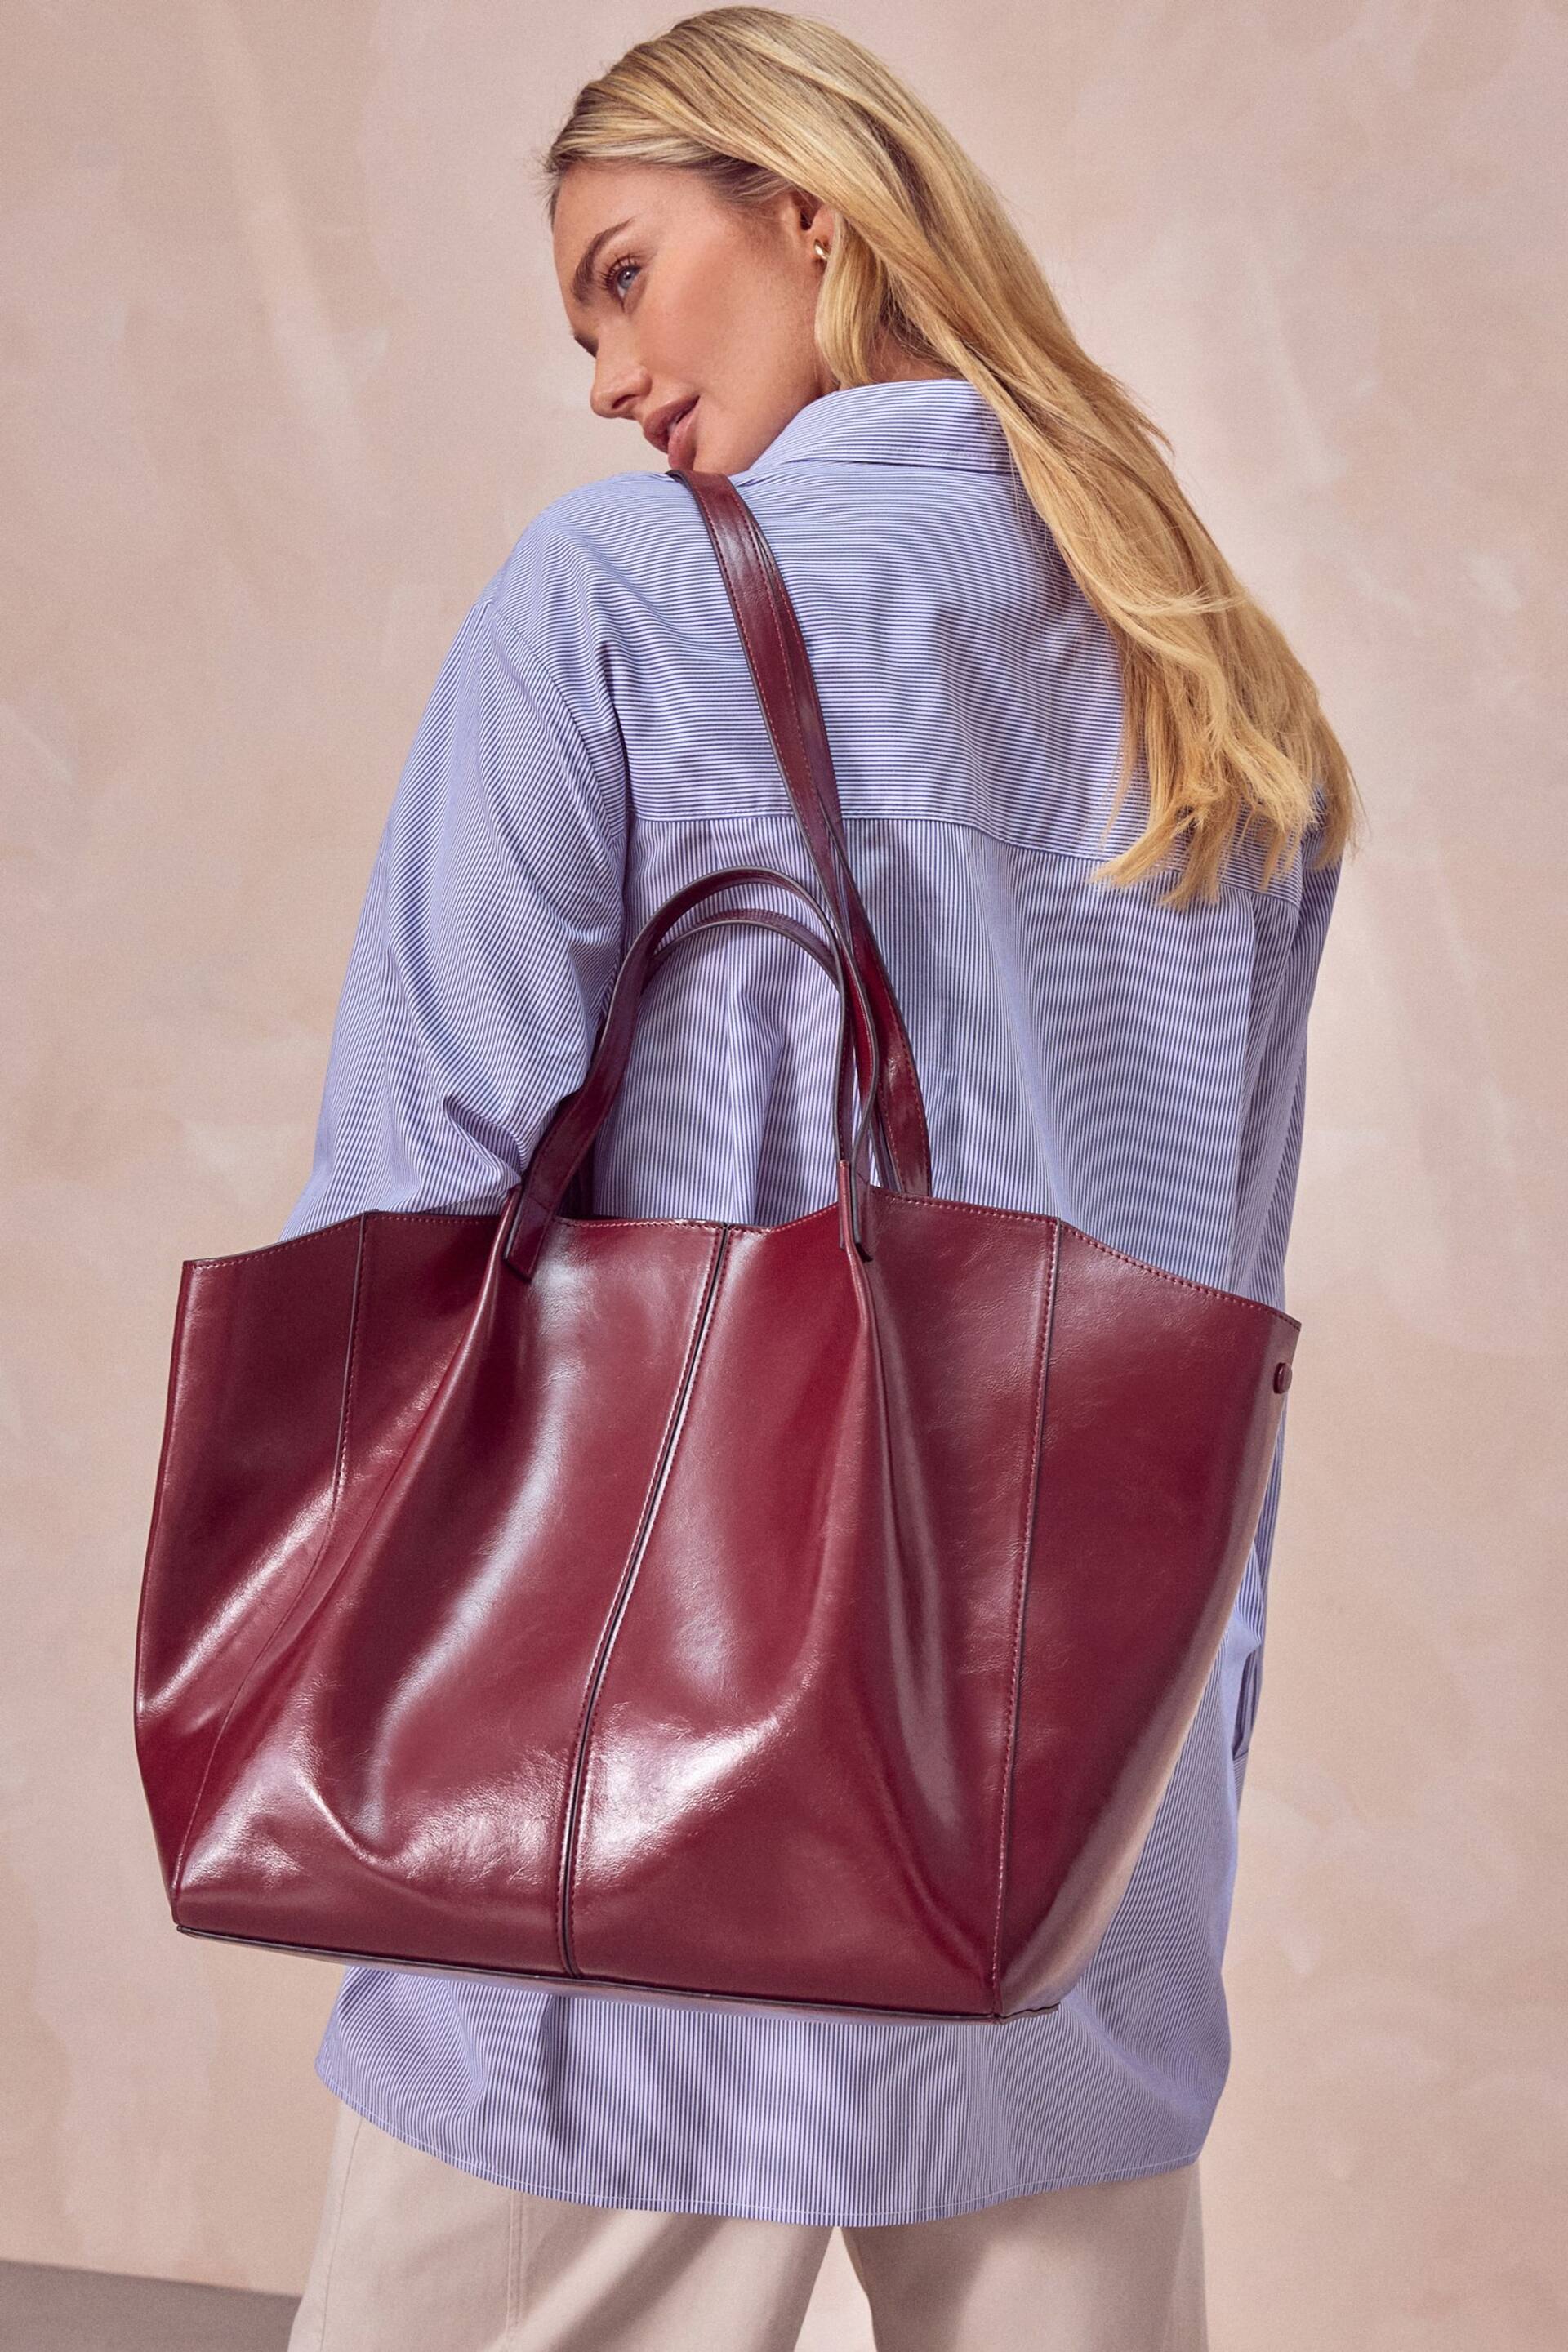 Burgundy Red Shopper Bag - Image 2 of 9